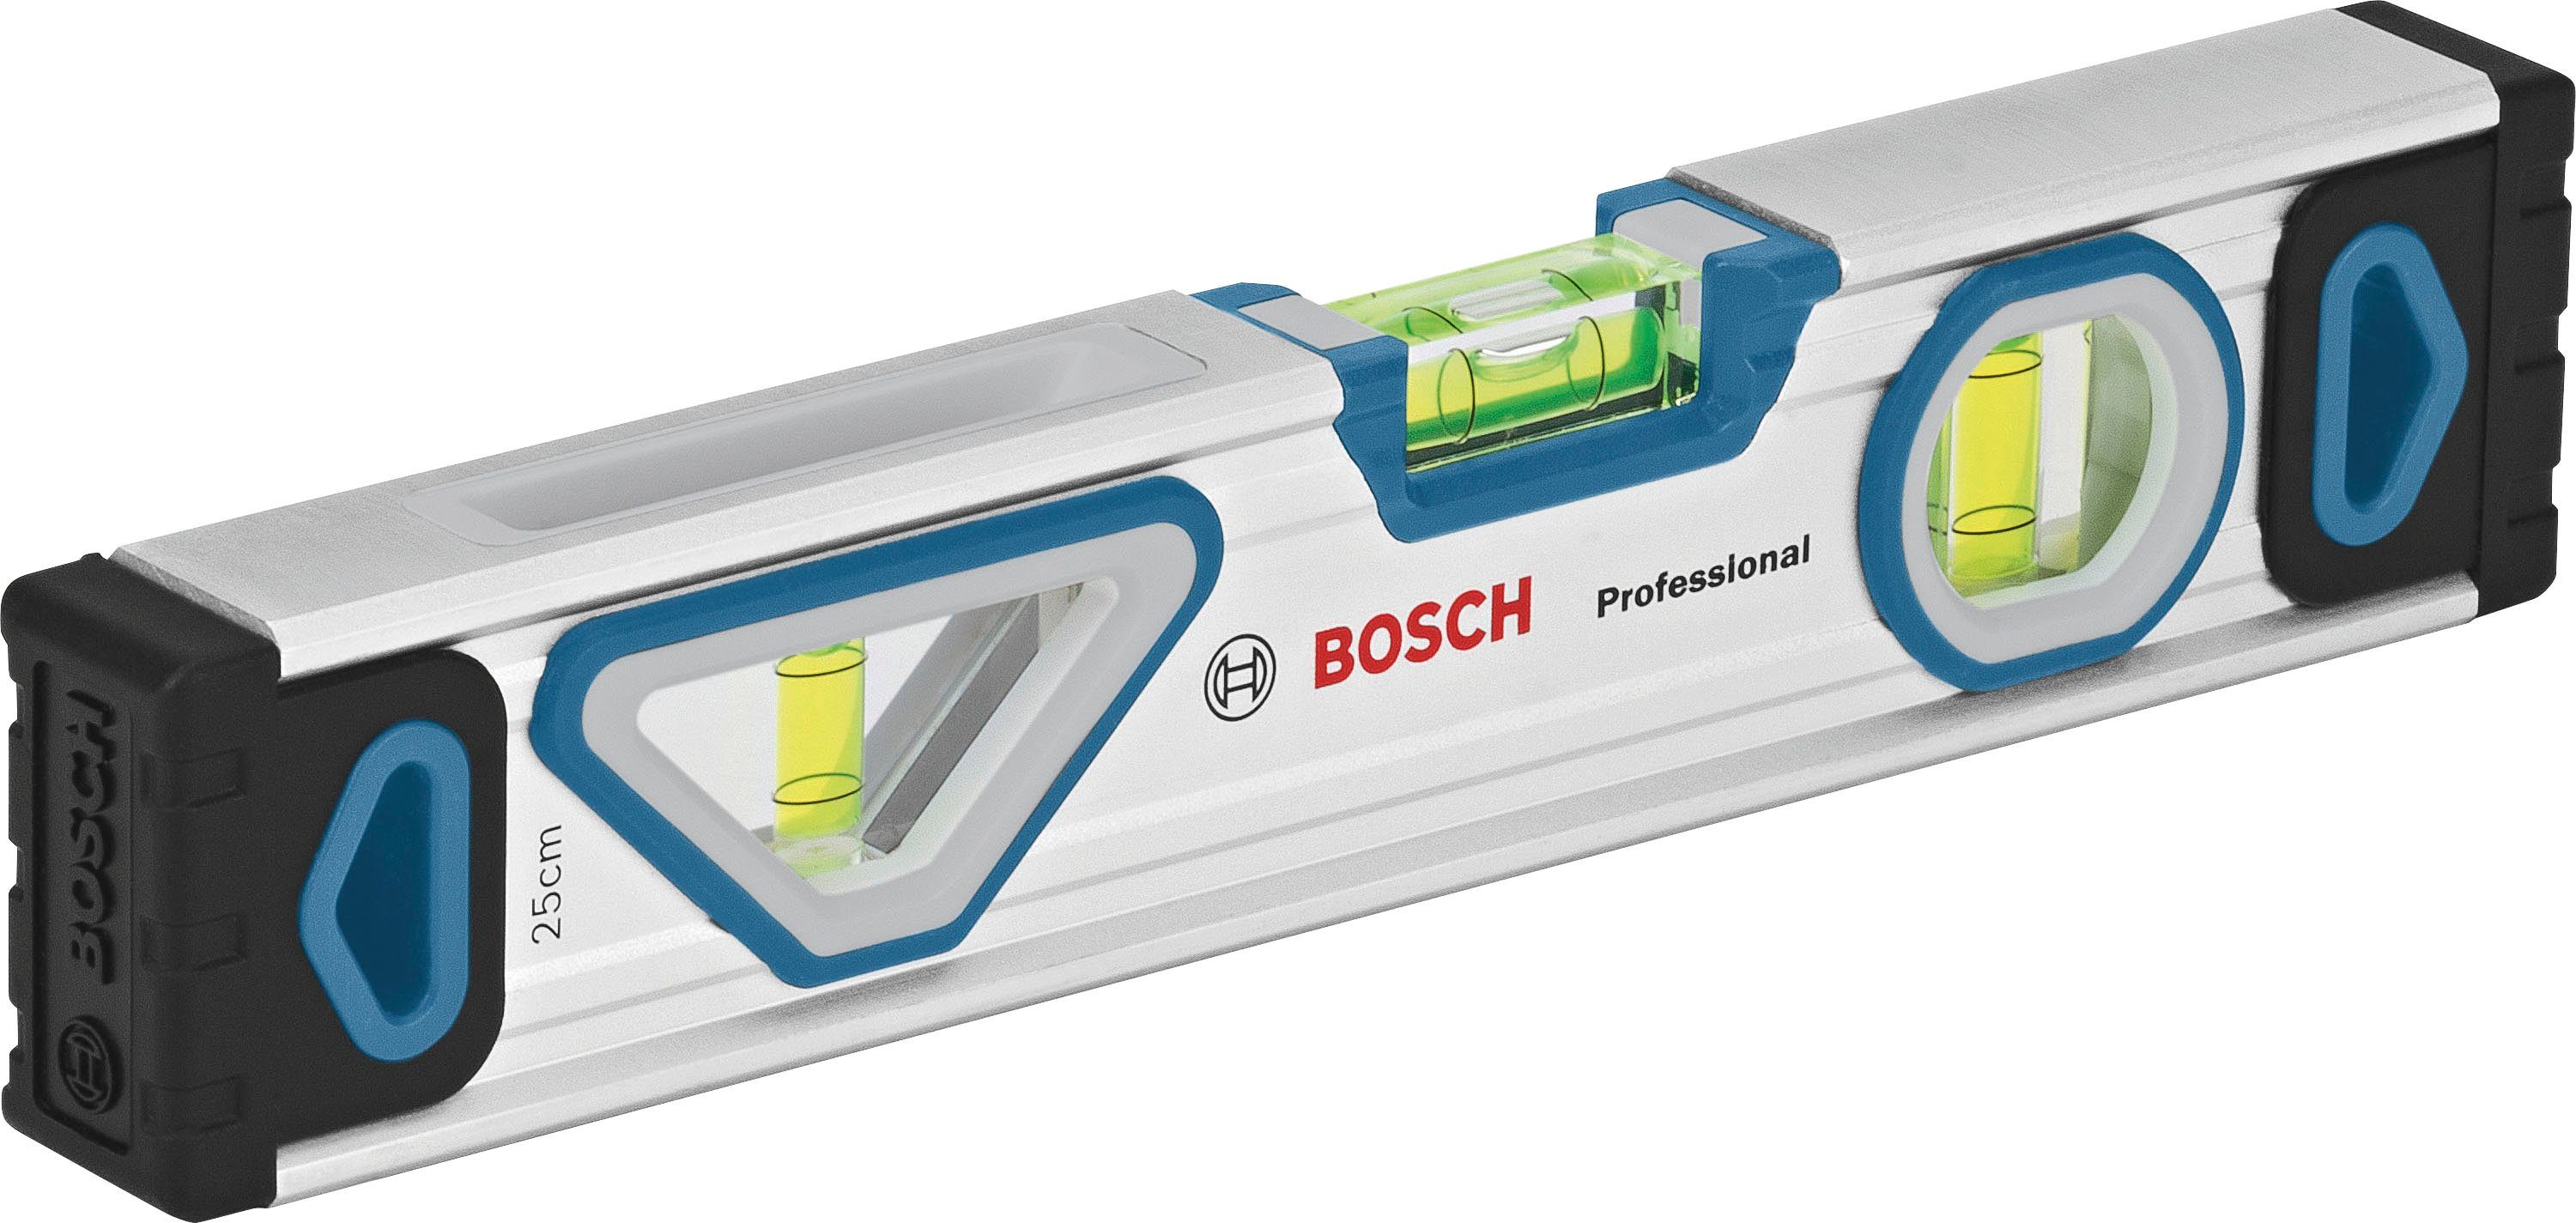 Bosch Professional Werkzeugset (1600A027M3), 13-tlg., Wasserwaage, Maßband, Universalmesser und Ersatzklingen | Werkzeug-Sets